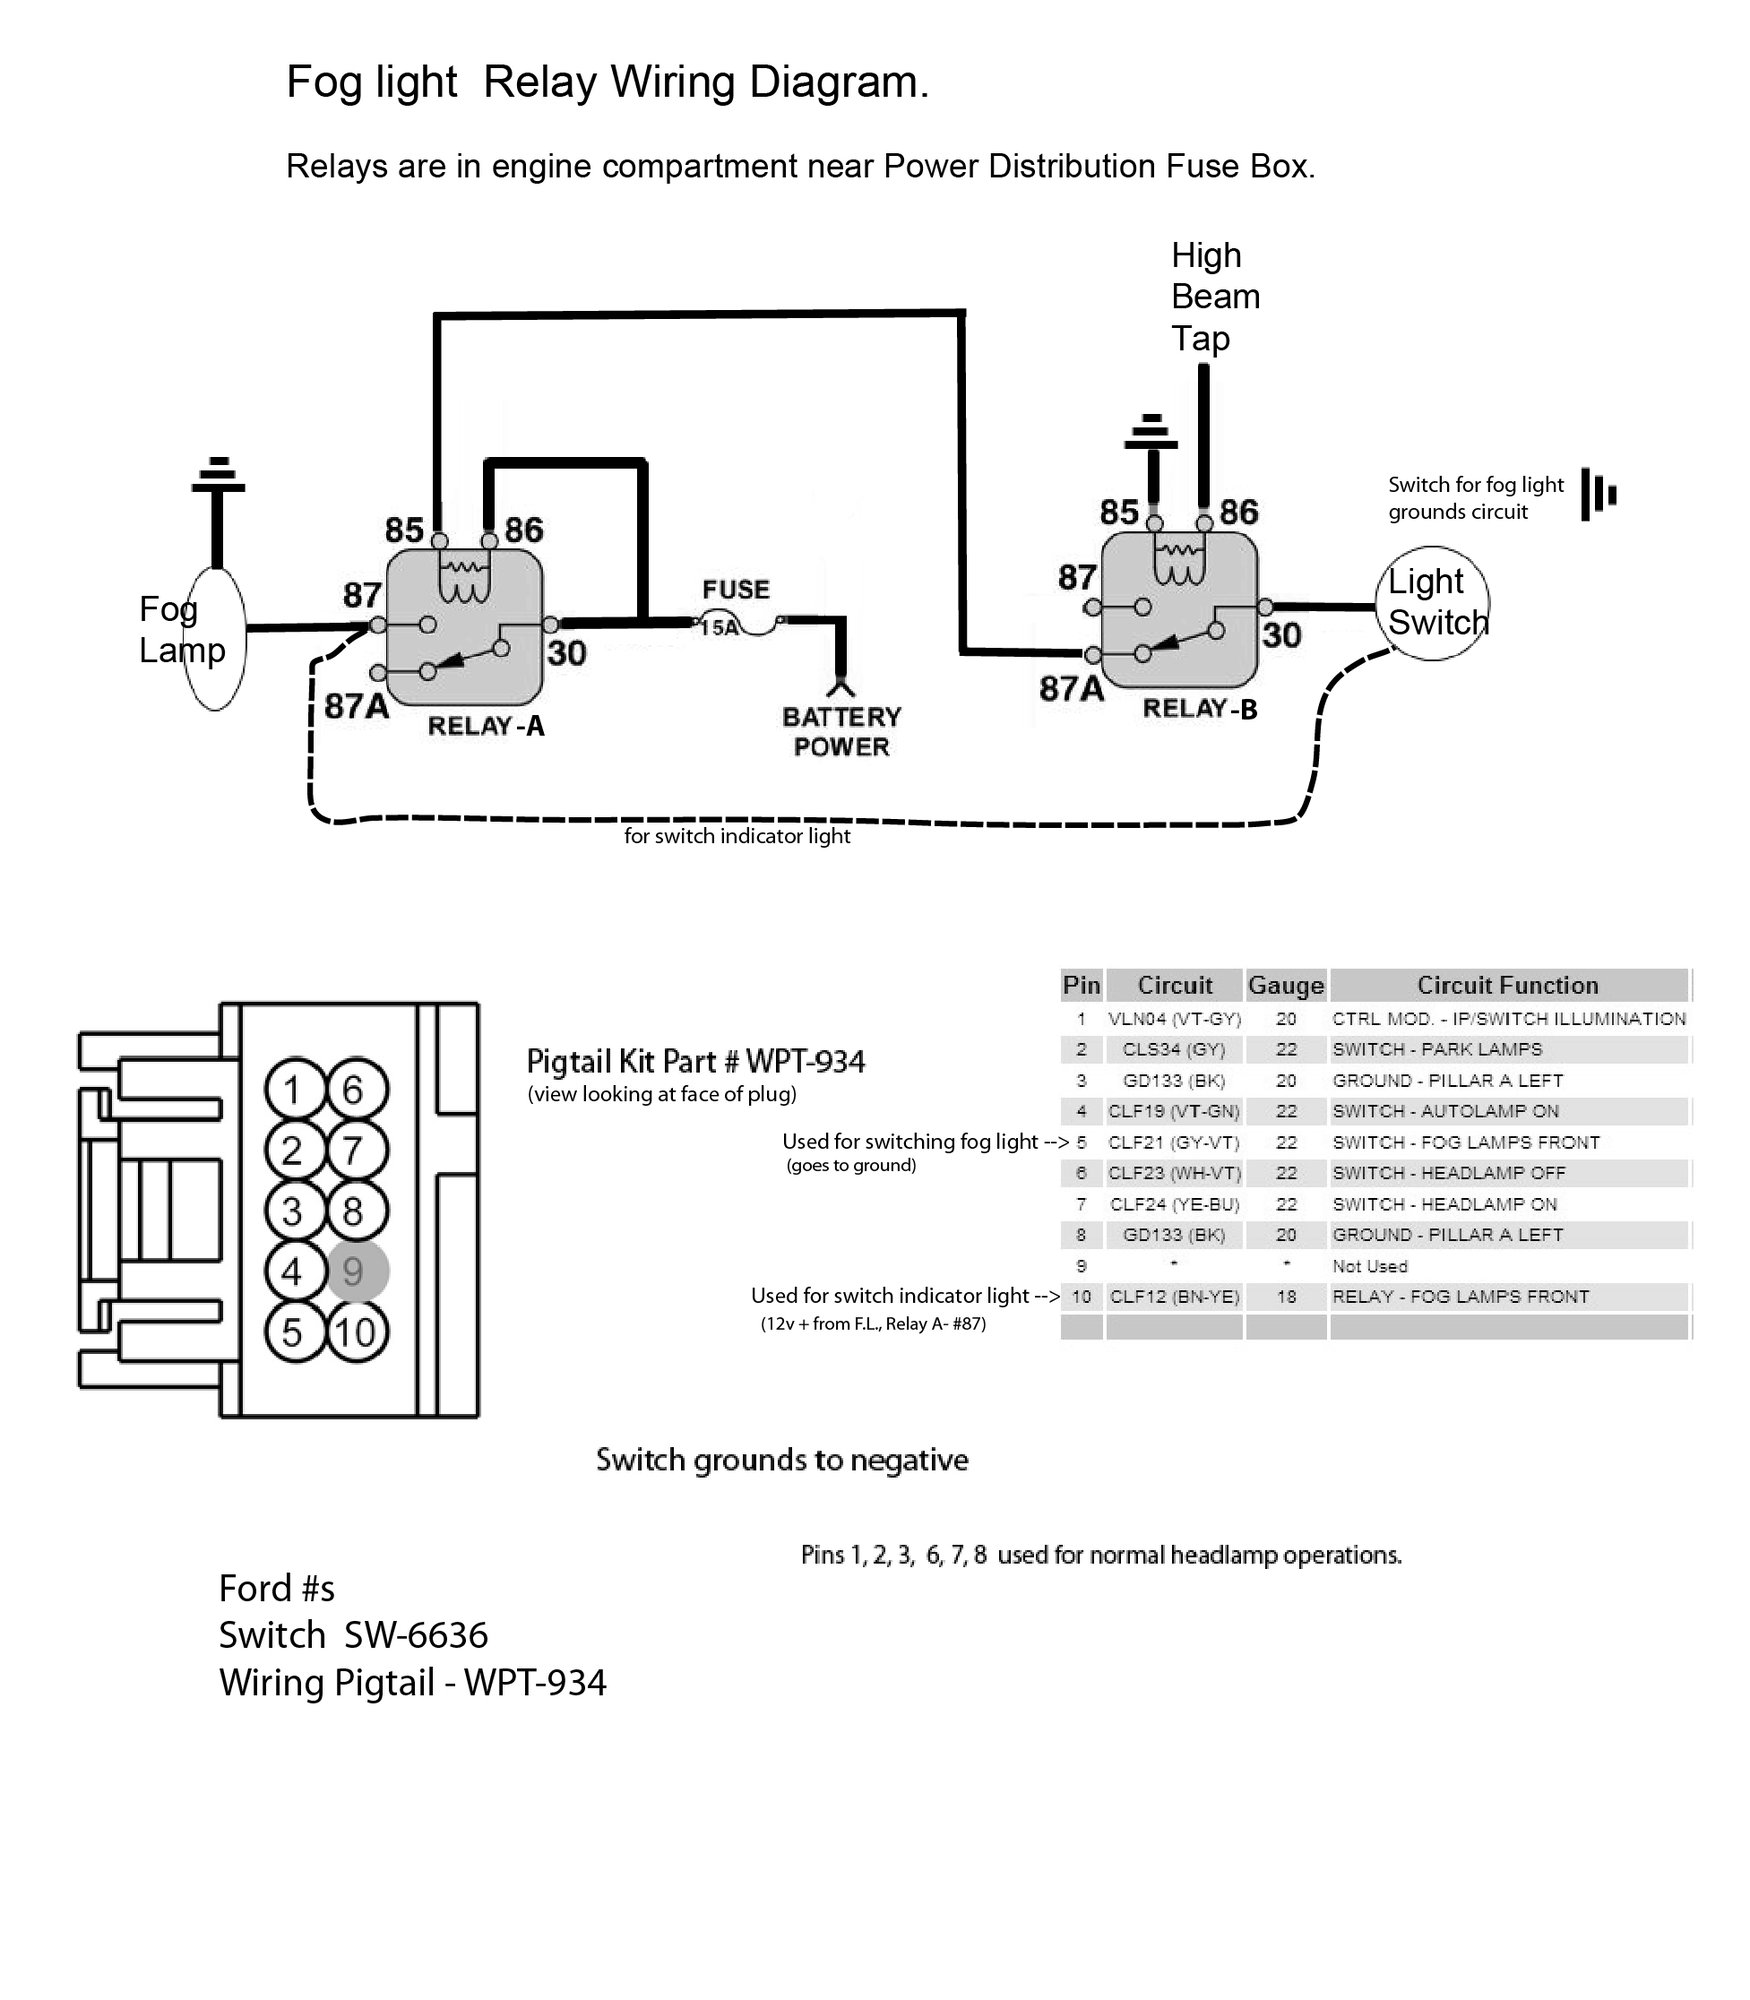 Fog Light Switch Wiring Diagram from cimg0.ibsrv.net